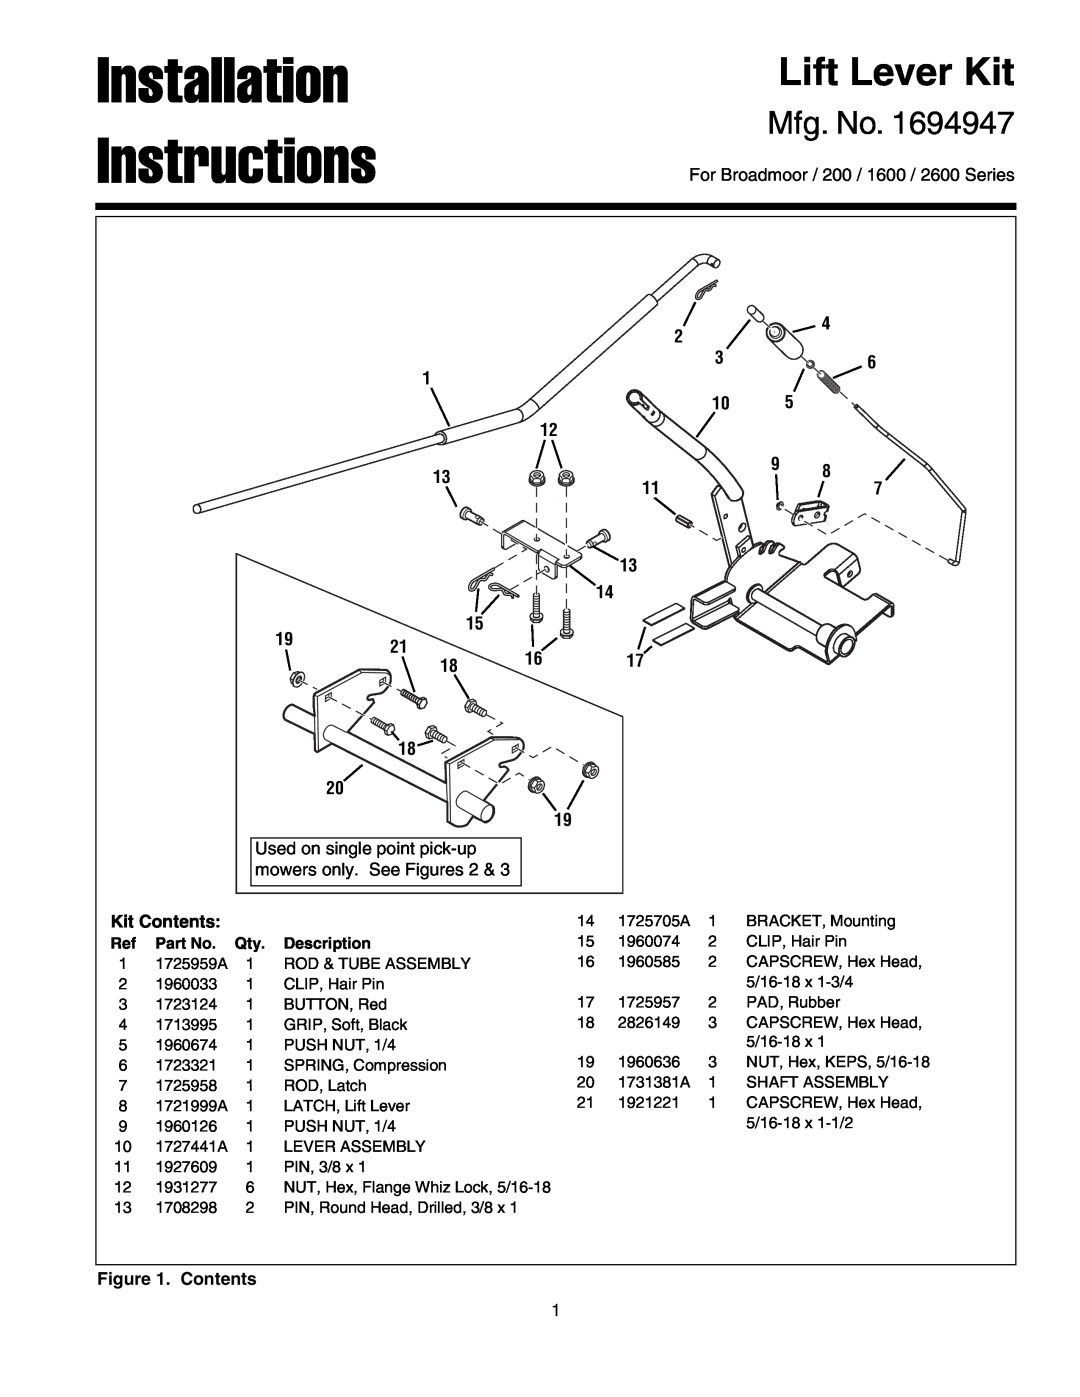 Snapper 1694947 installation instructions Installation Instructions, Lift Lever Kit, Mfg. No, Description 